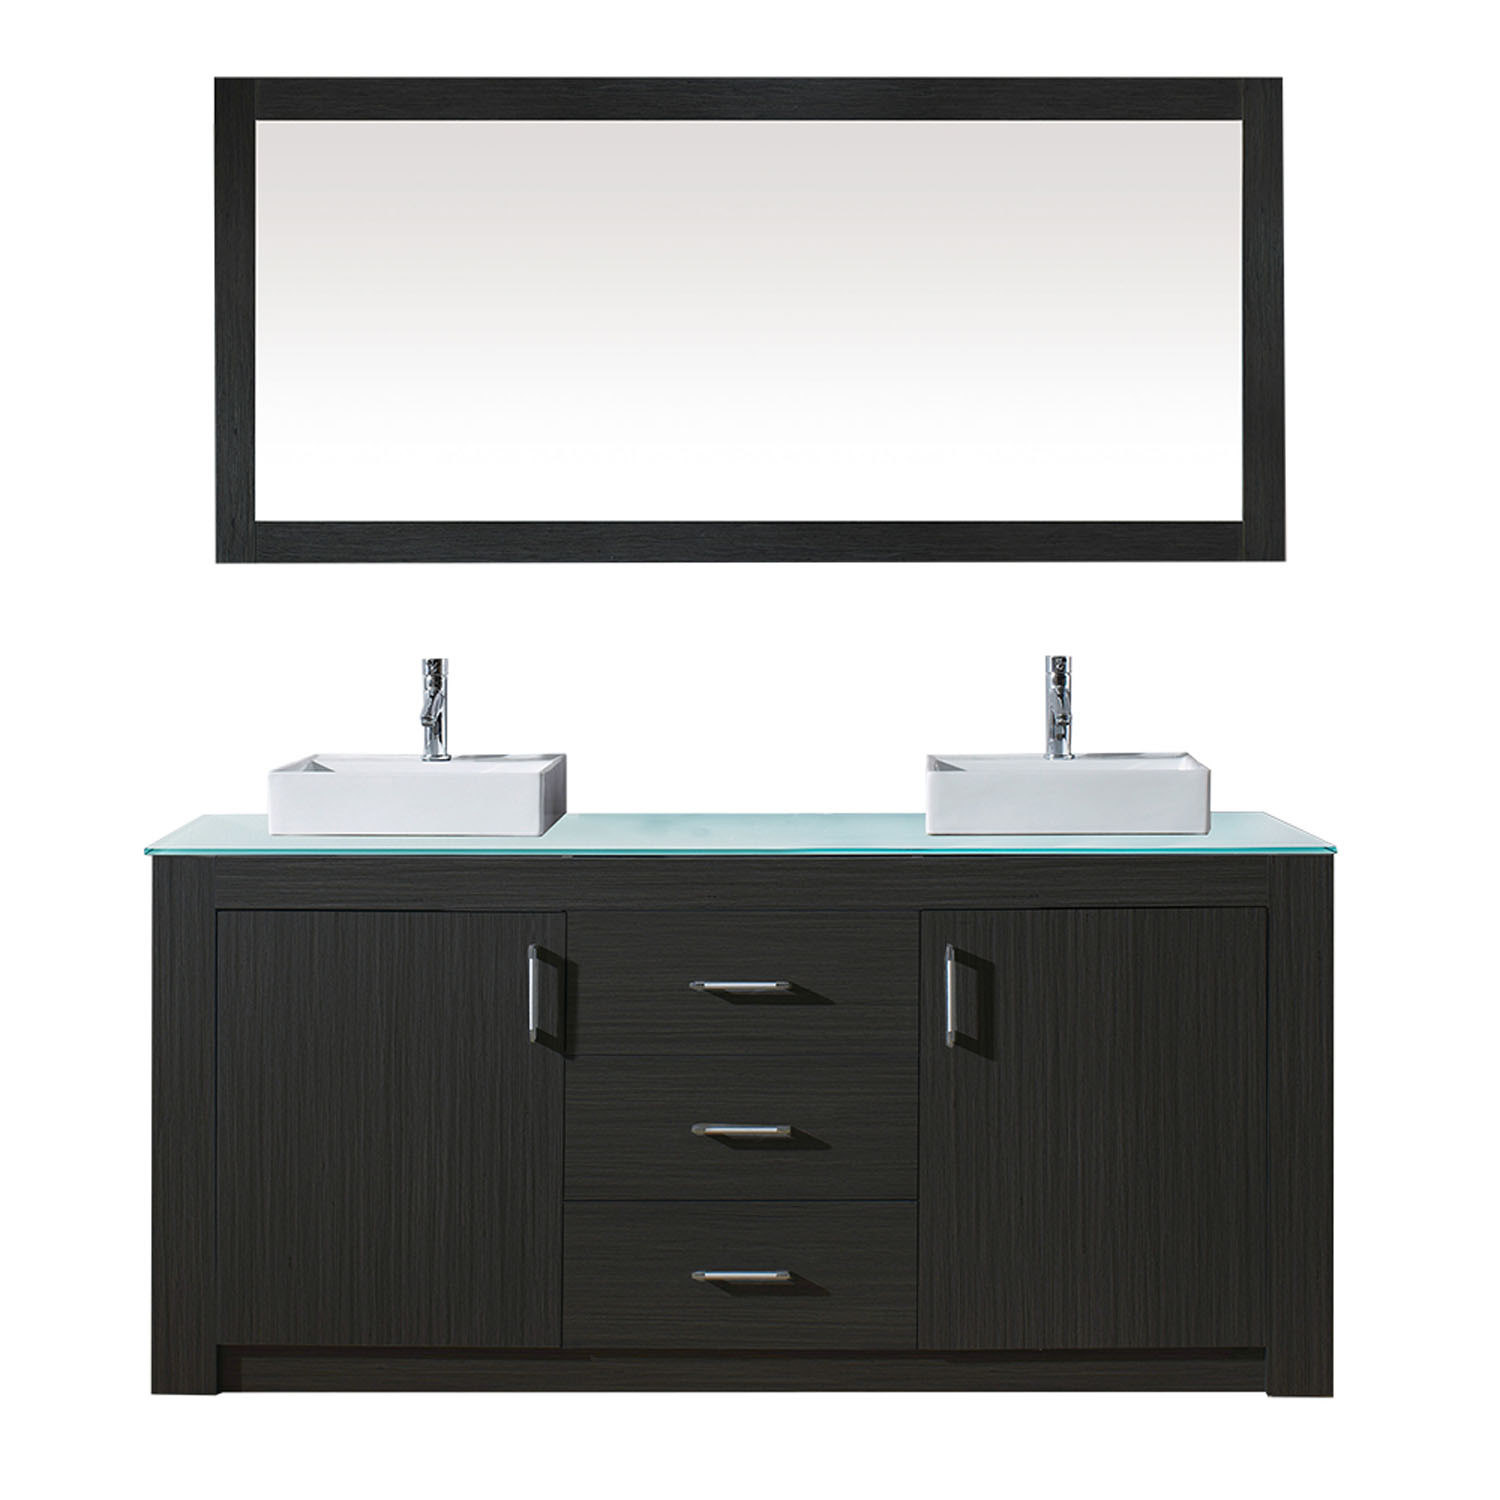 Virtu KD-90072-G-ZG Tavian 72 Inch Double Bathroom Vanity Set In Zebra Grey